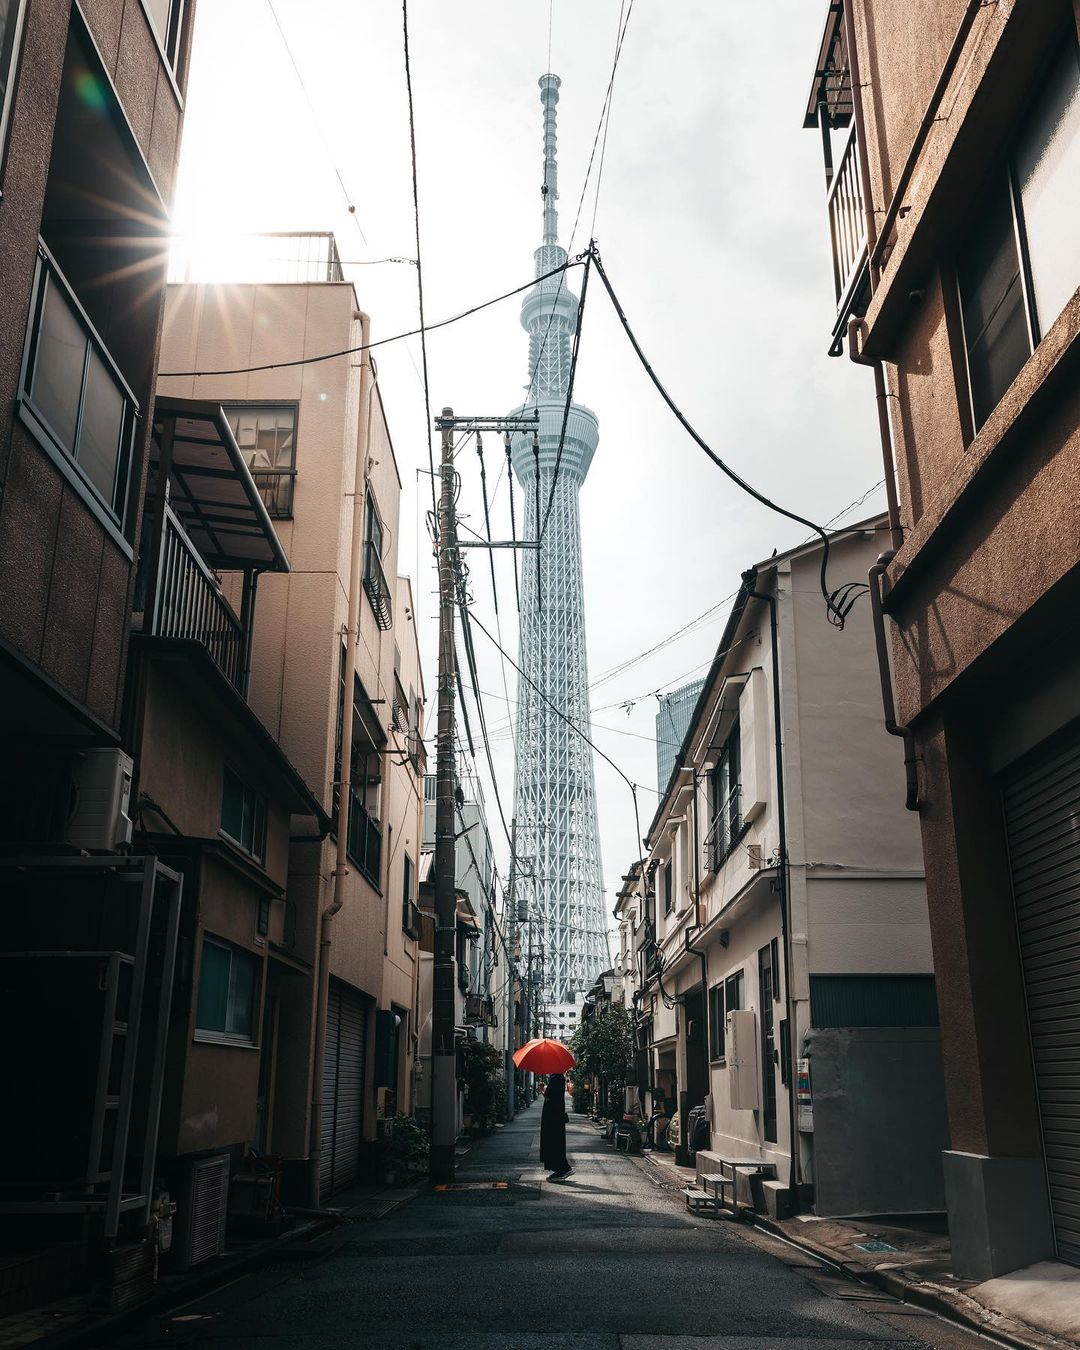 Магический и притягательный мир японских улиц и ландшафтов Юсуке, городской, фотографии, Читать, пейзажи, городские, поразительные, запечатлеть, чтобы, Японии, улицы, яркие, исследует, основном, уличной, Кубота, фокусируется, Япония, Токио, проживающий